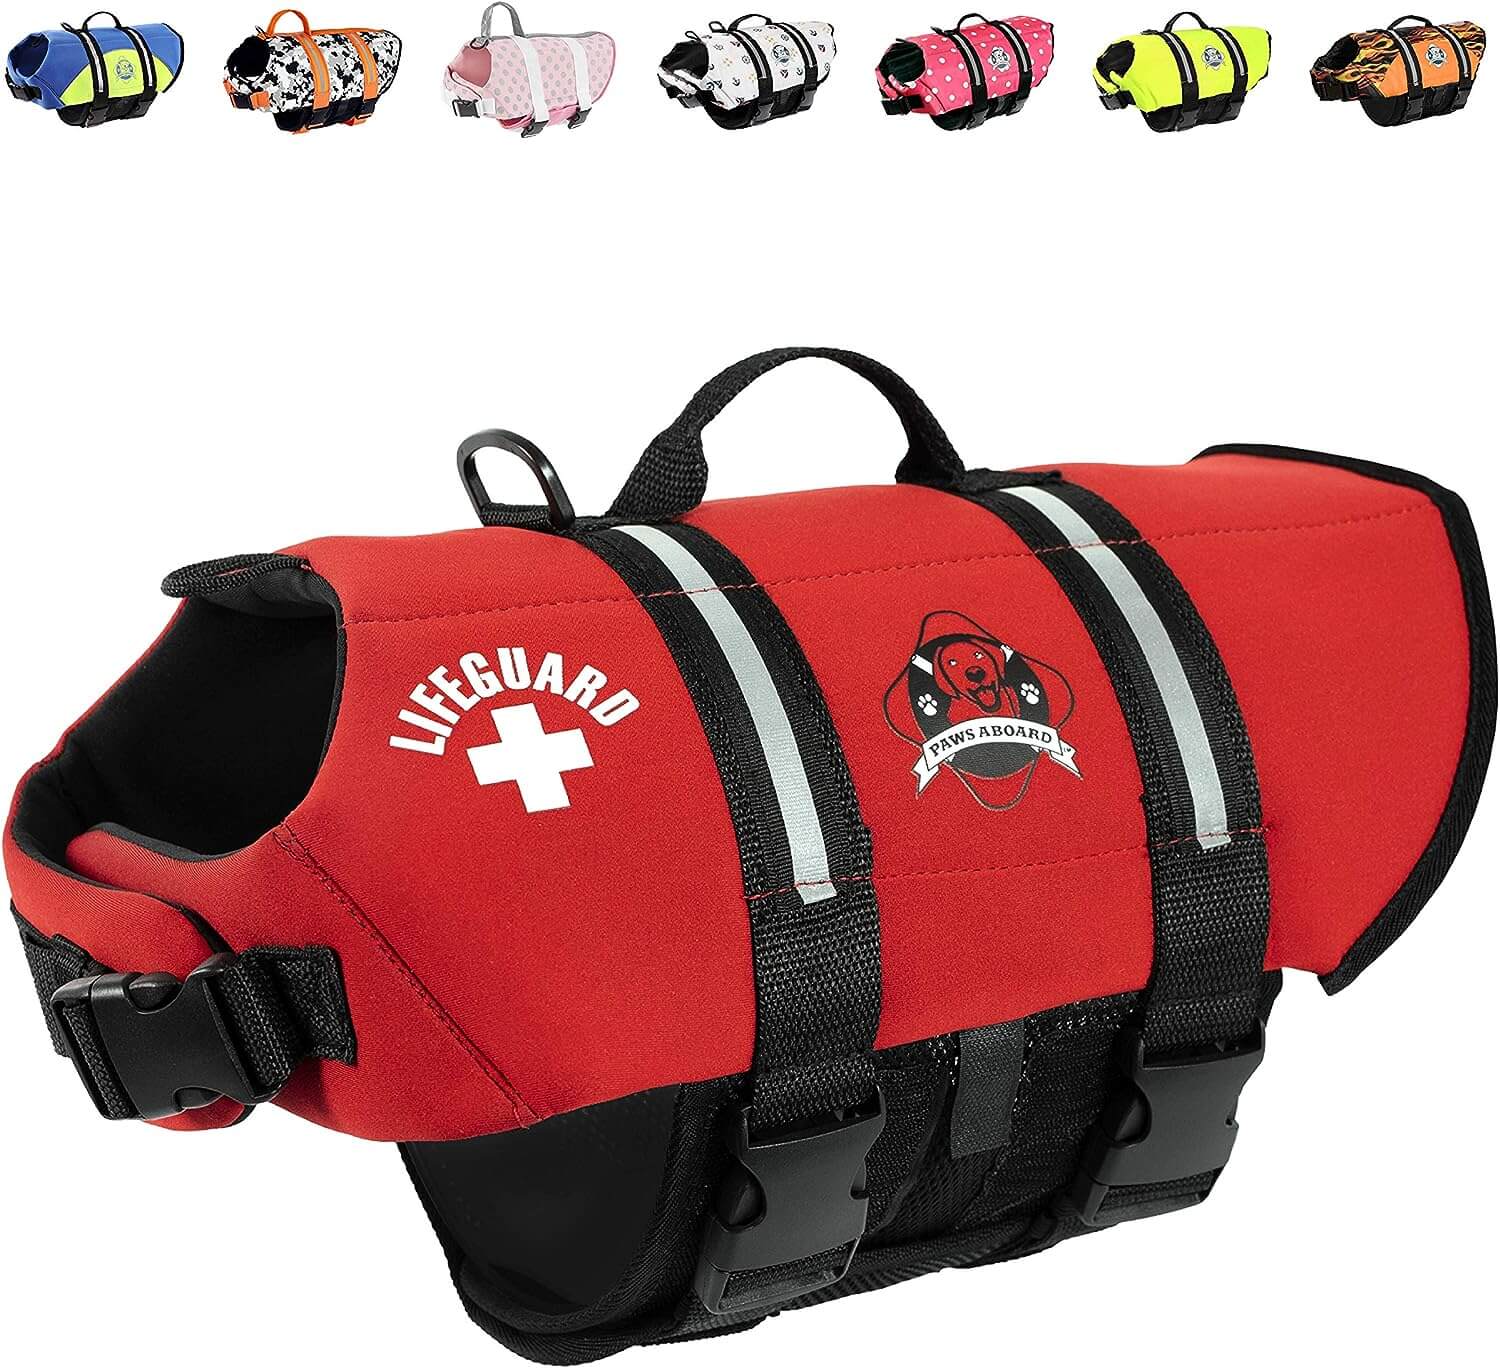 Paws Aboard Dog Life Jacket